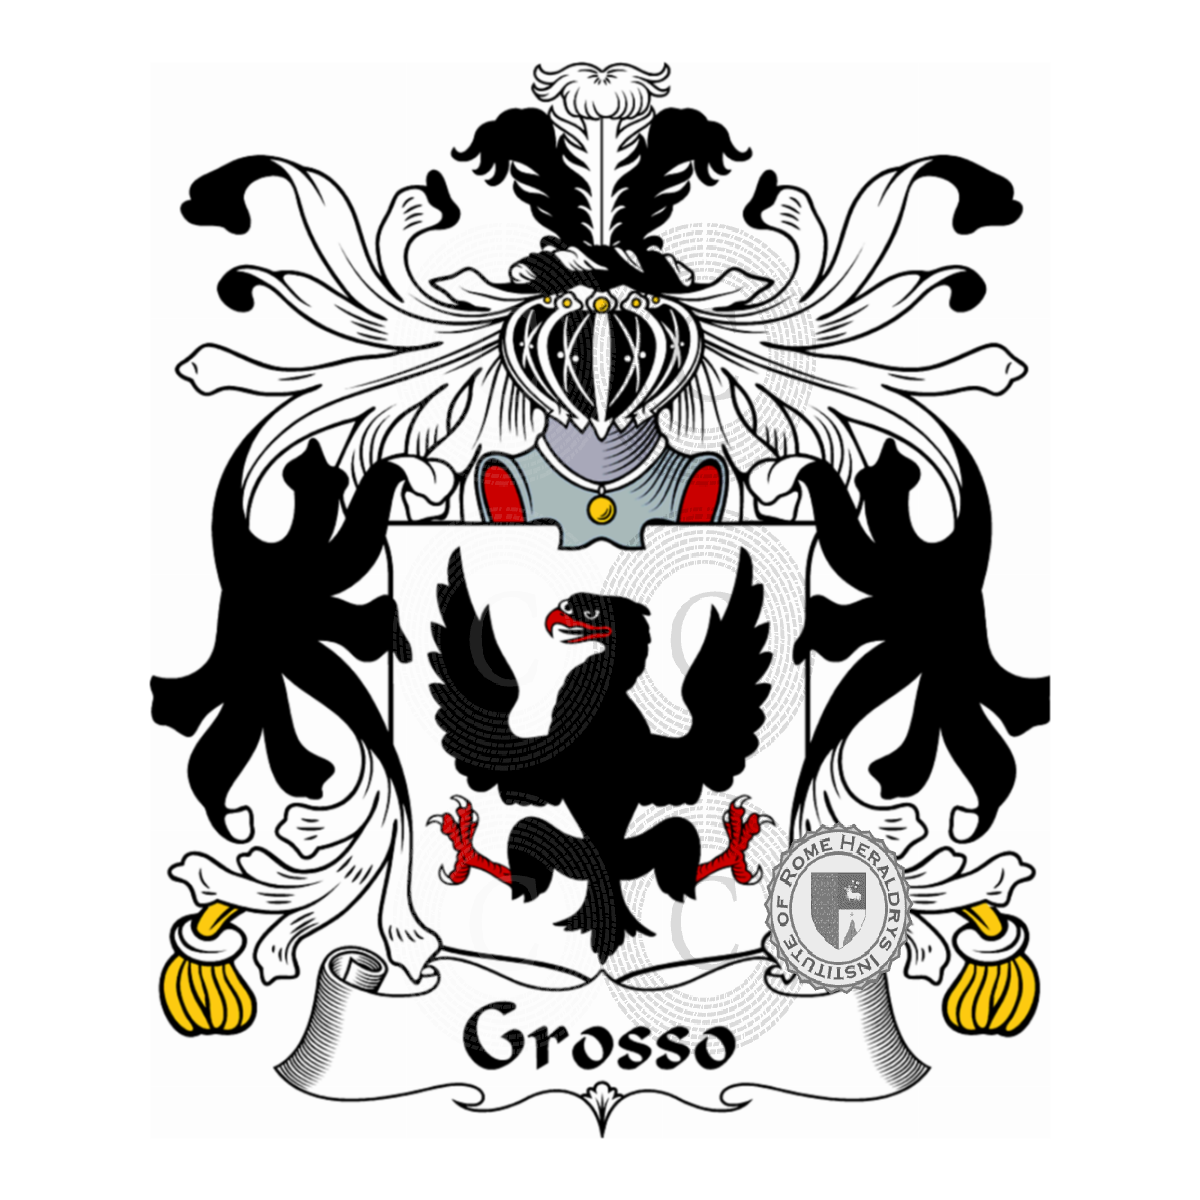 Brasão da famíliaGrosso, de Grossi,Grossi